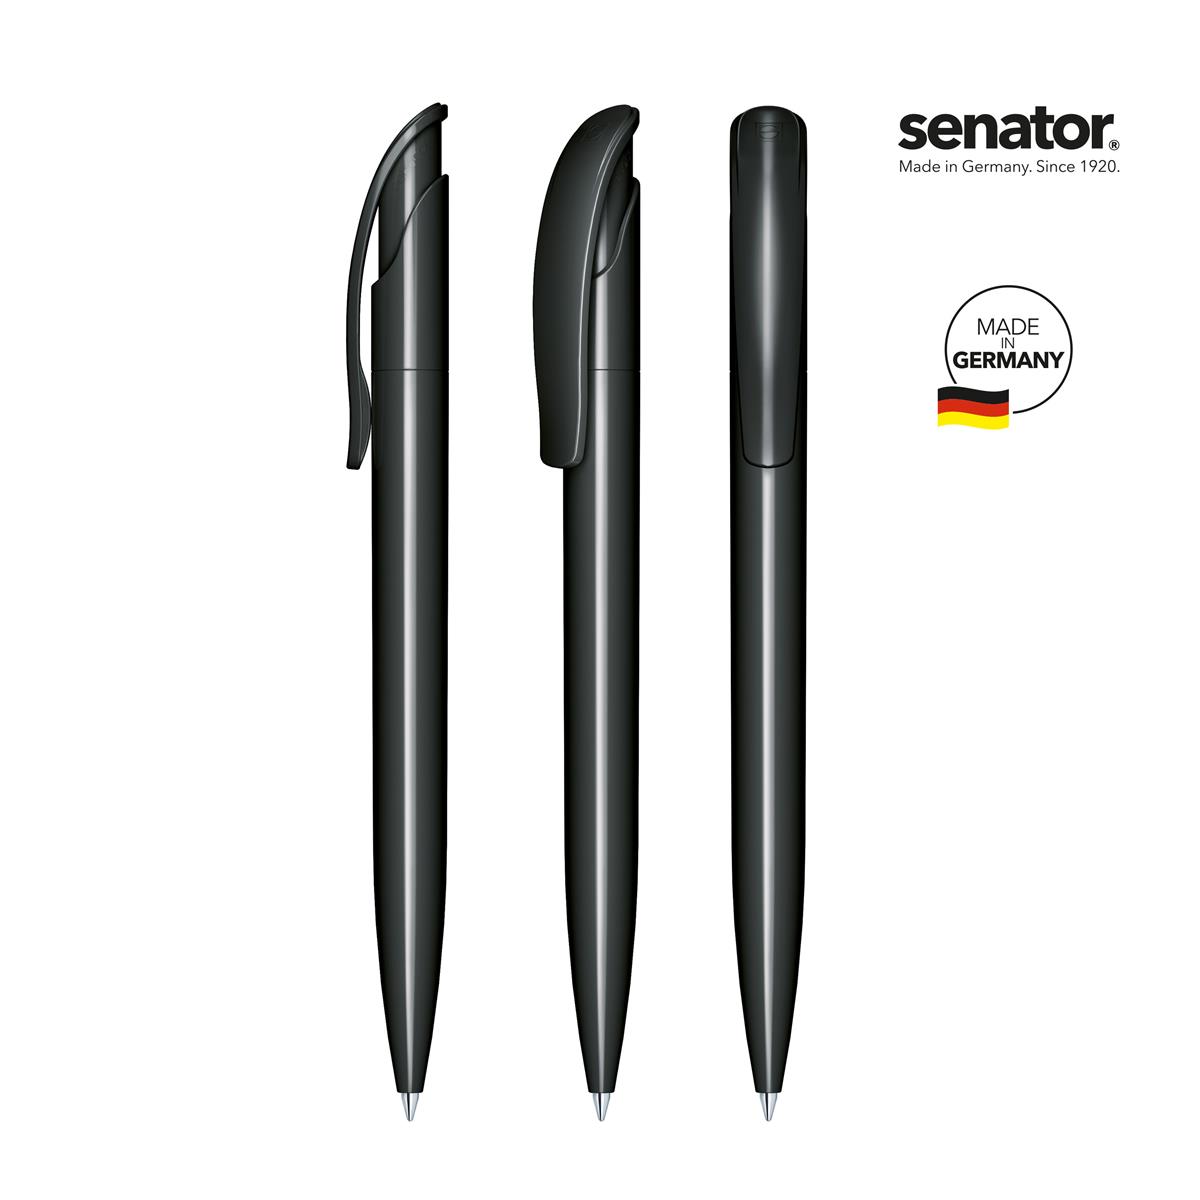 2416-senator-challenger-polished-black-5-p.jpg